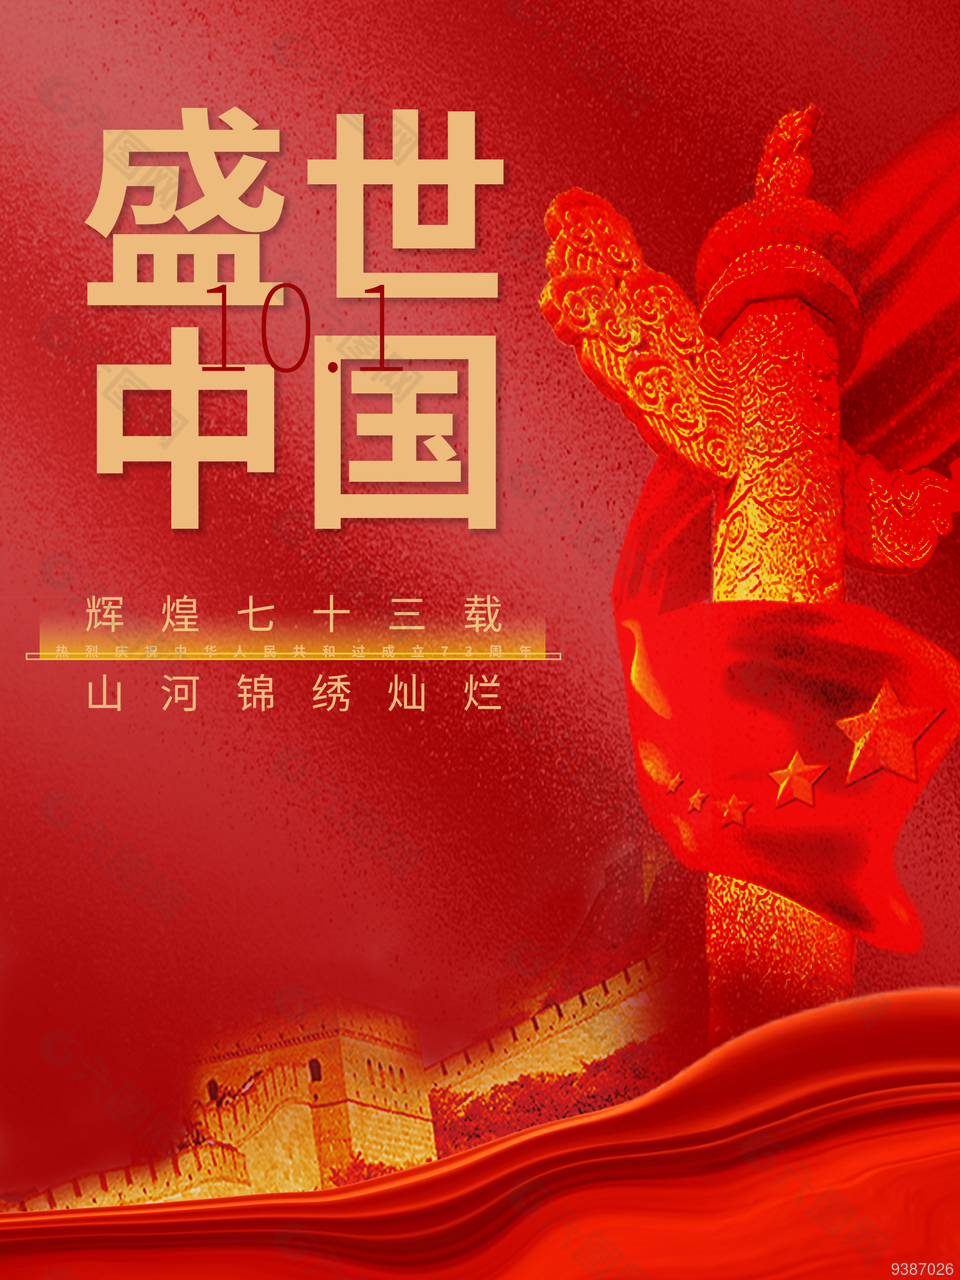 盛世中国国庆节快乐宣传海报